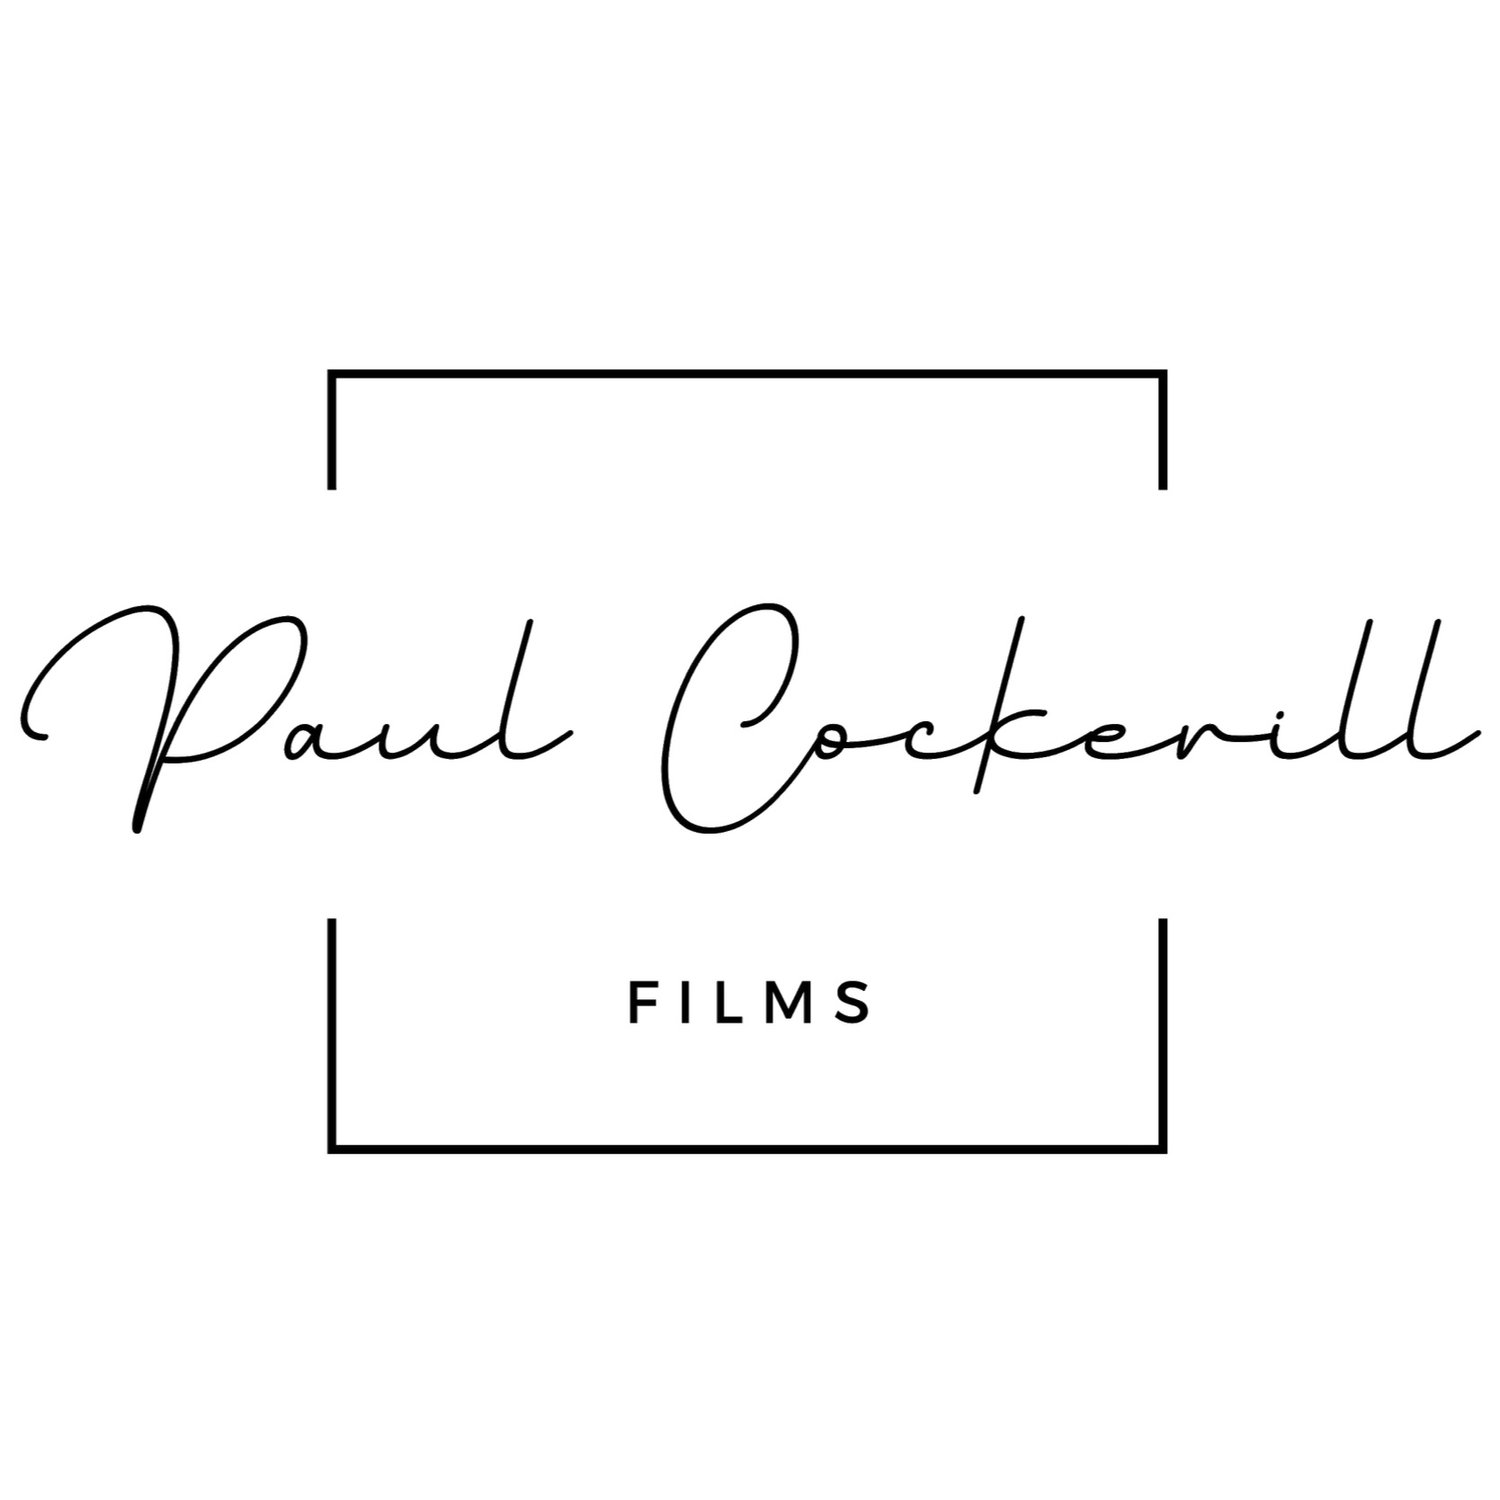 Paul Cockerill Films